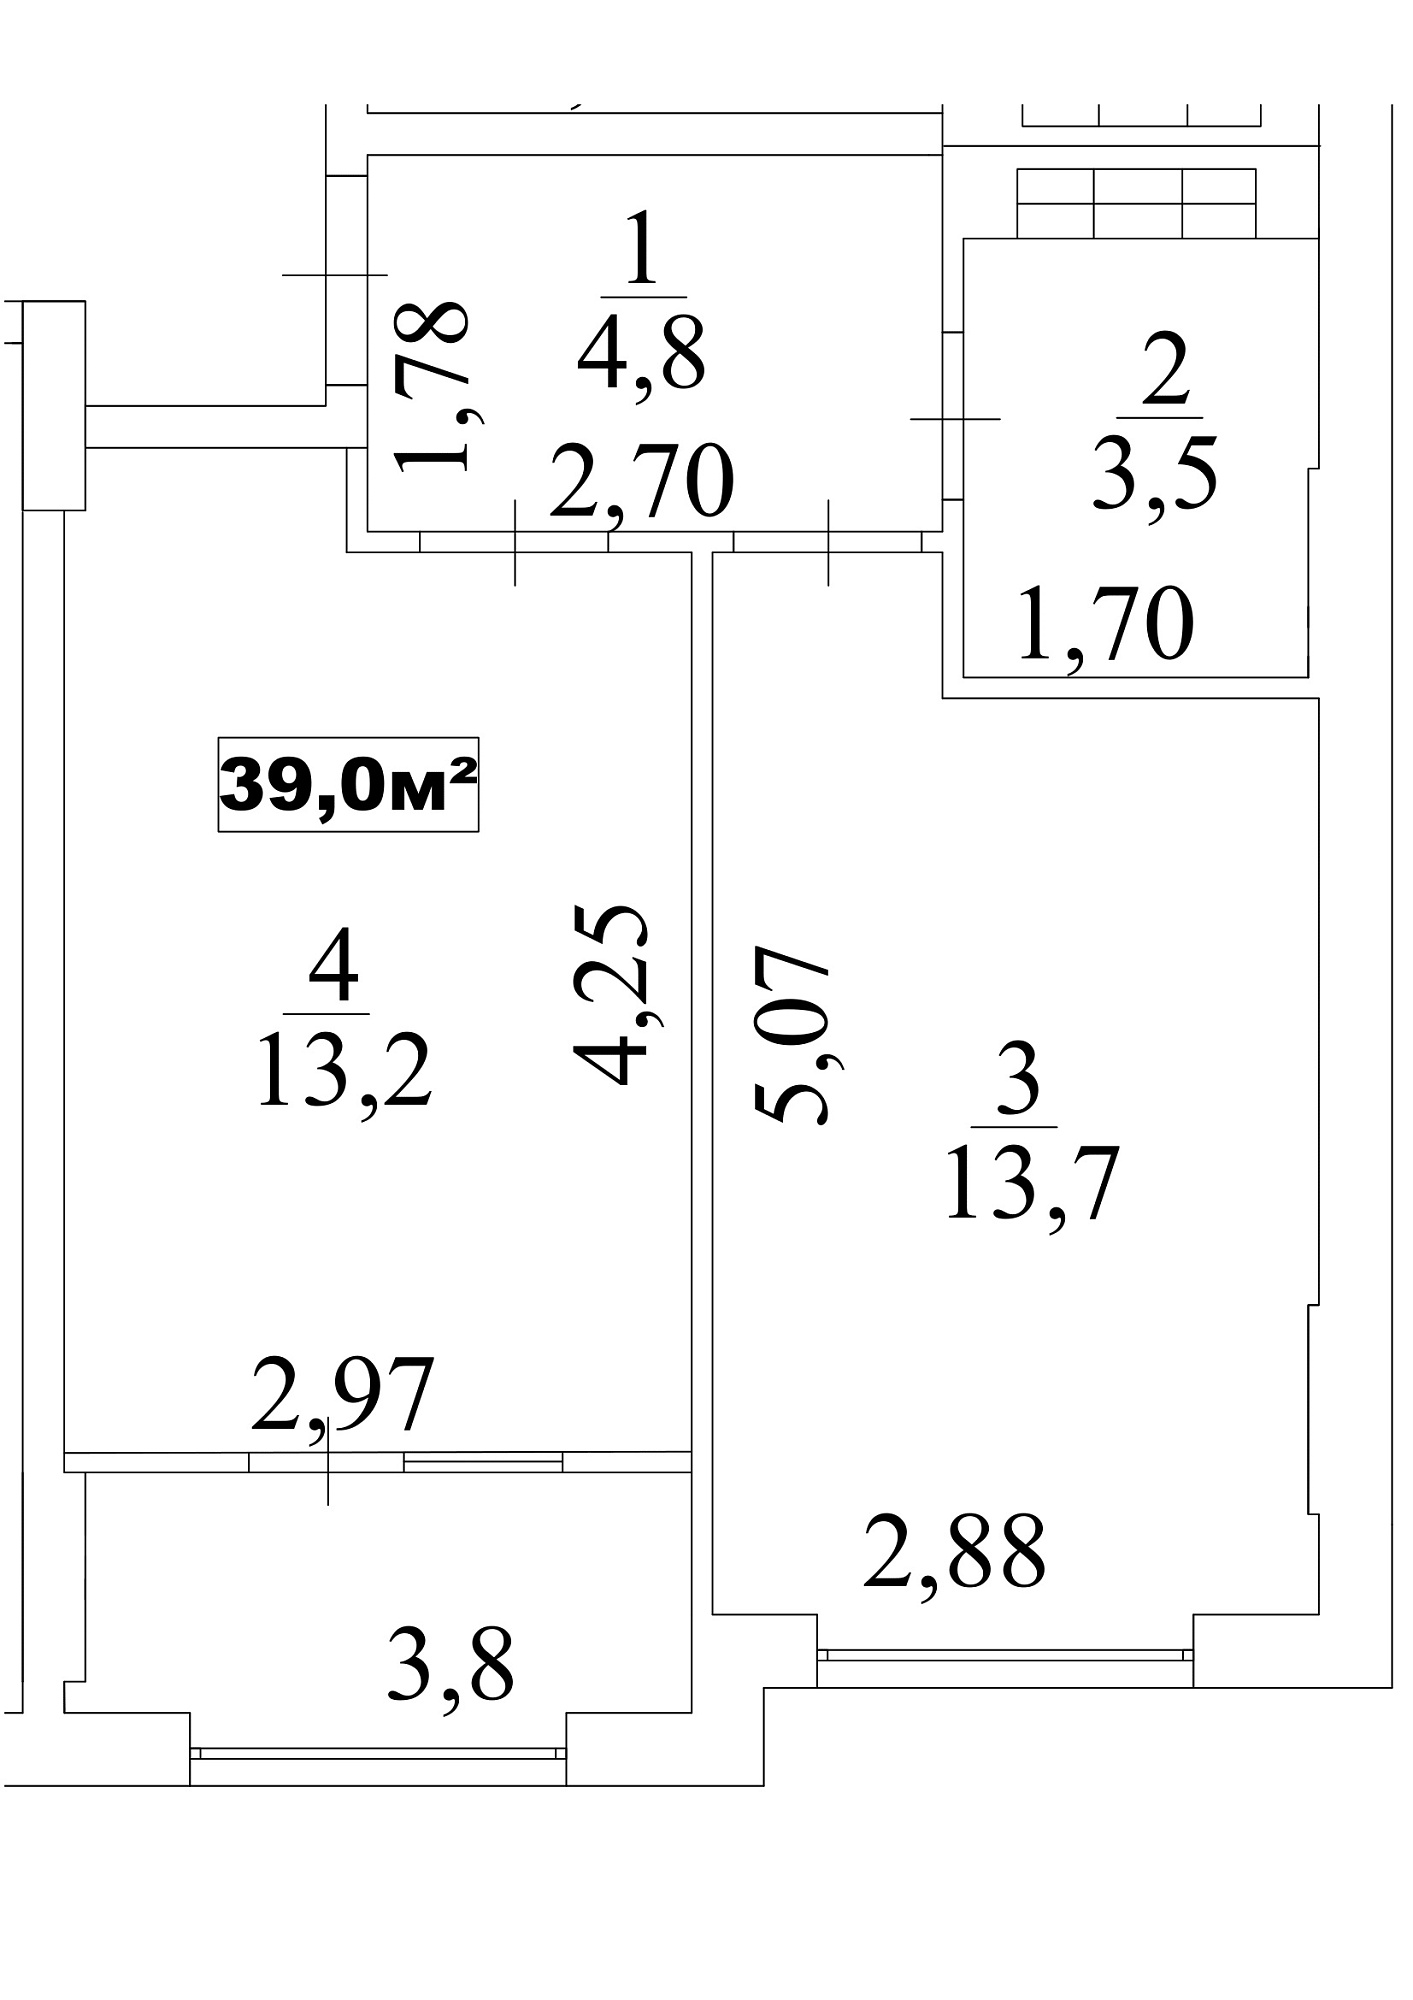 Планування 1-к квартира площею 39м2, AB-10-09/0079в.